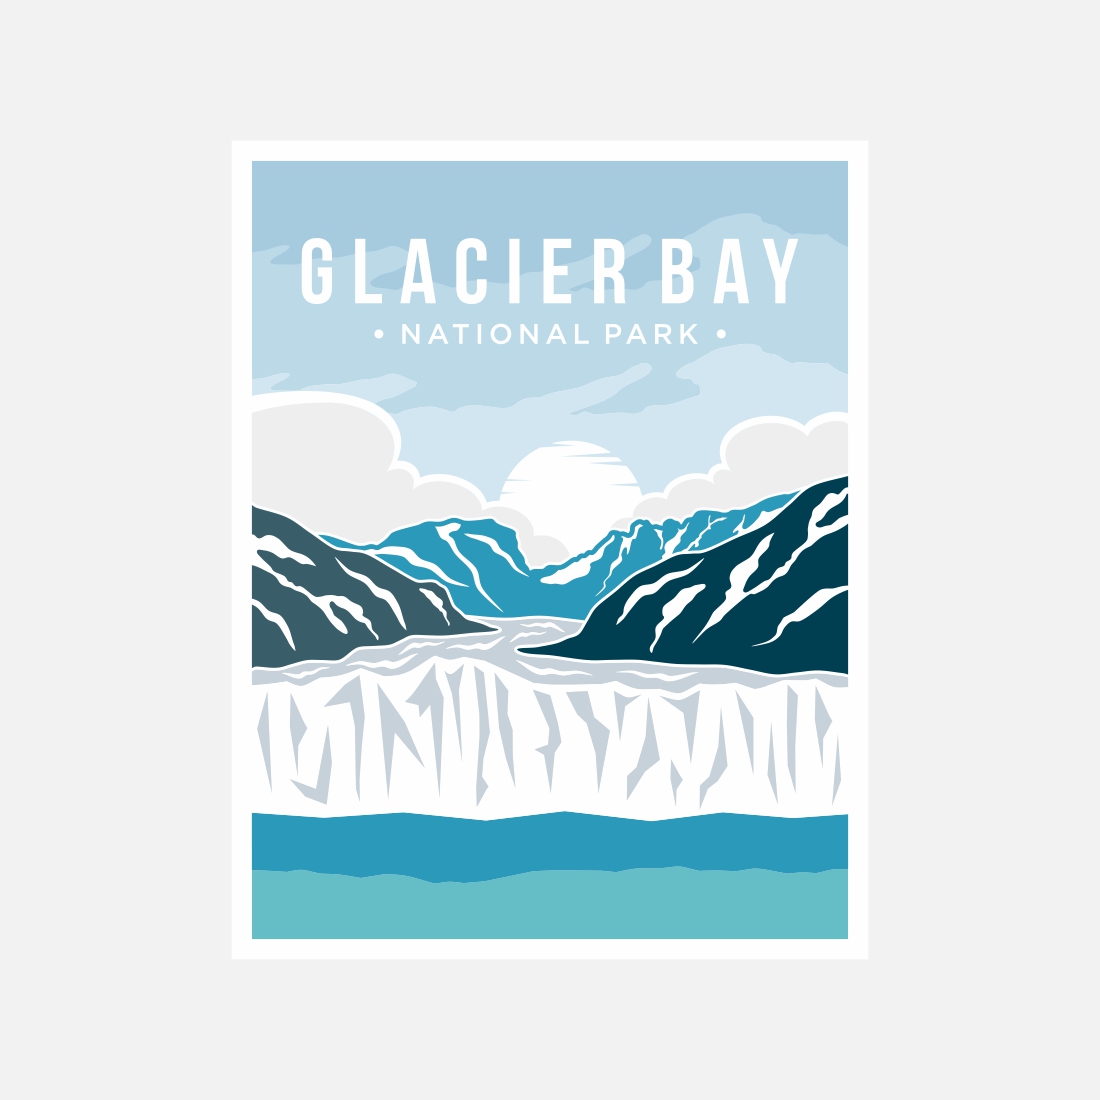 Glacier Bay National Park poster vector illustration design – Only $8 cover image.